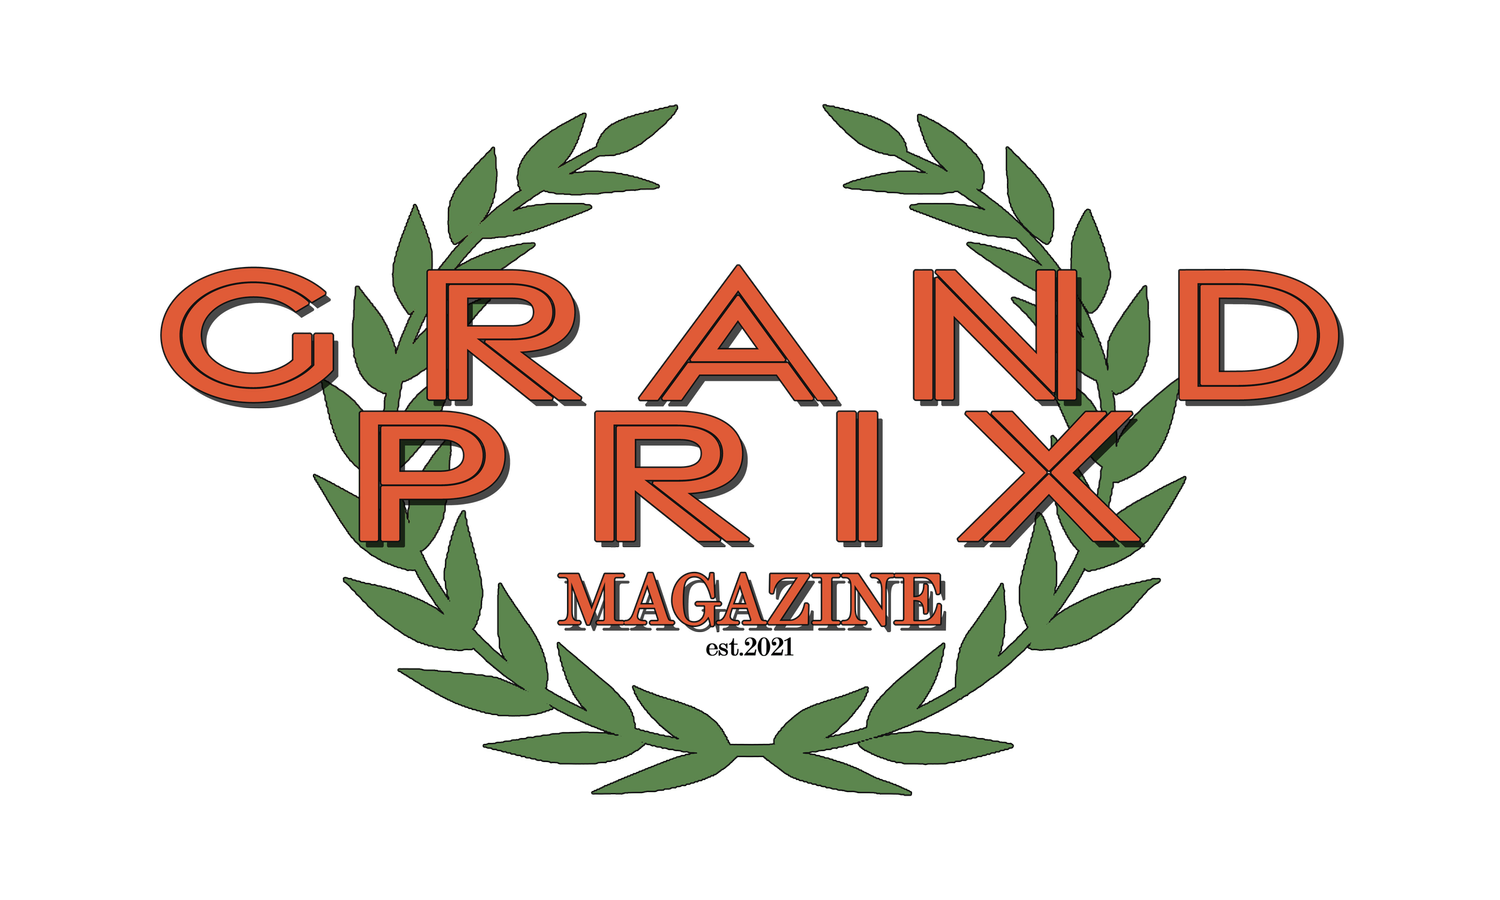 Grand Prix Magazine